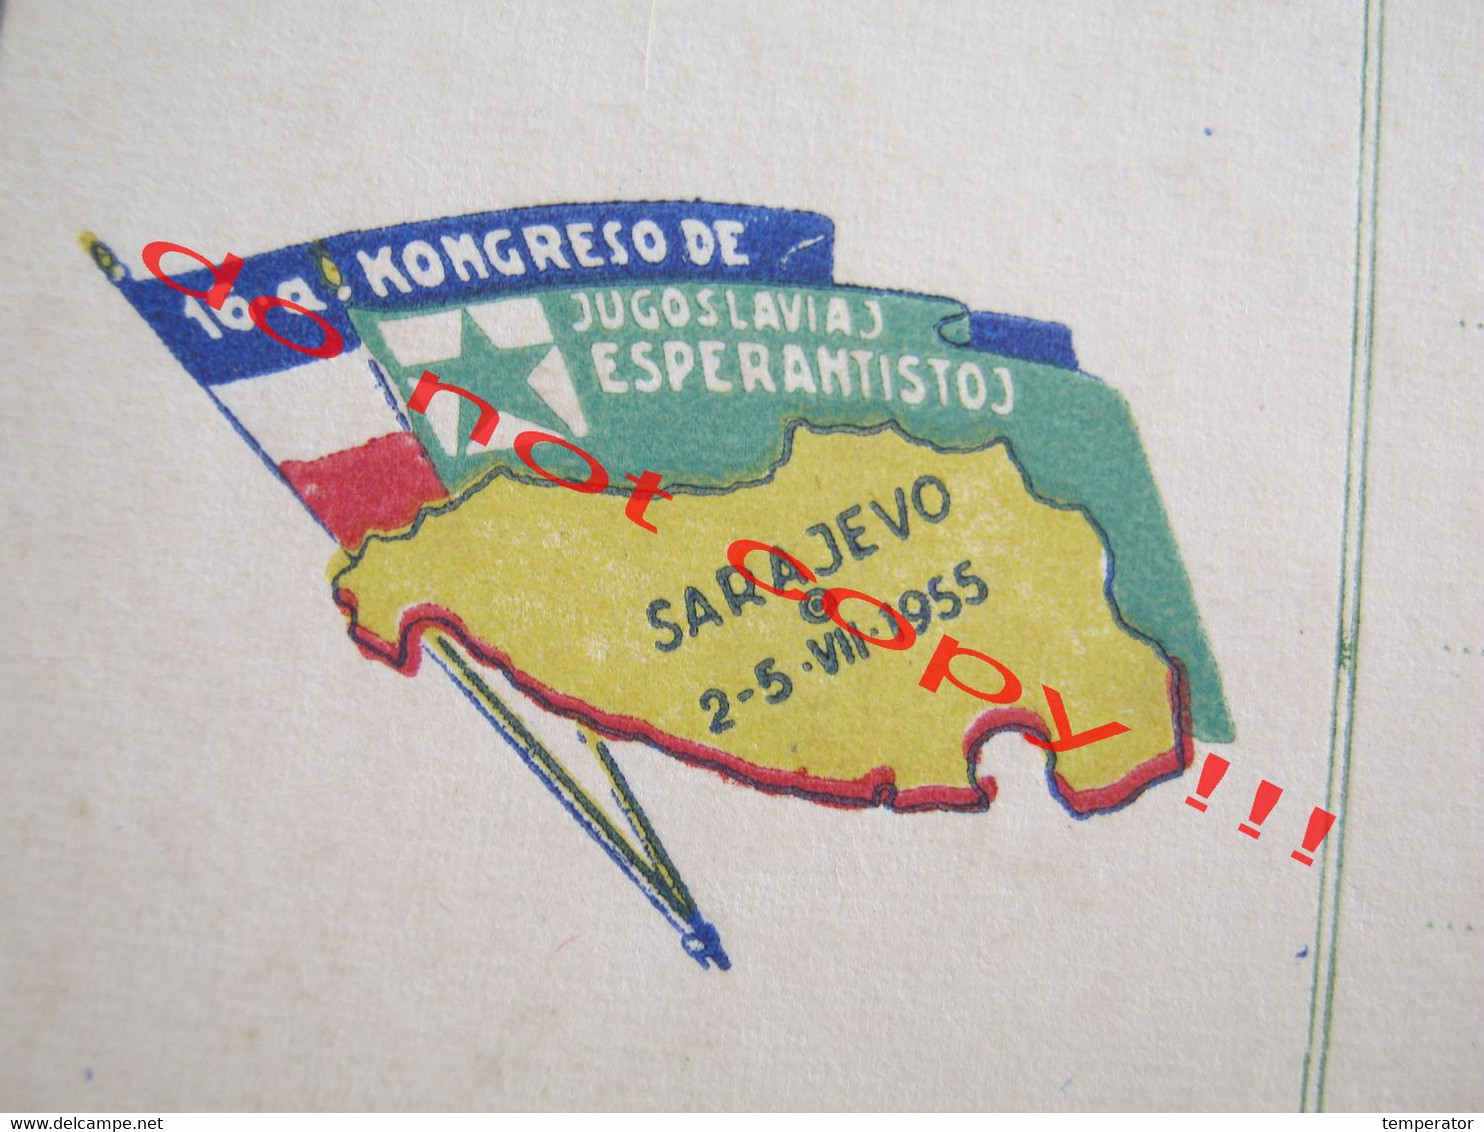 ESPERANTO POSTKARTO / 16-a KONGRESO JUGOSLAVIA ESPERANTISTOJ - Sarajevo ( 1955 ) - Esperanto